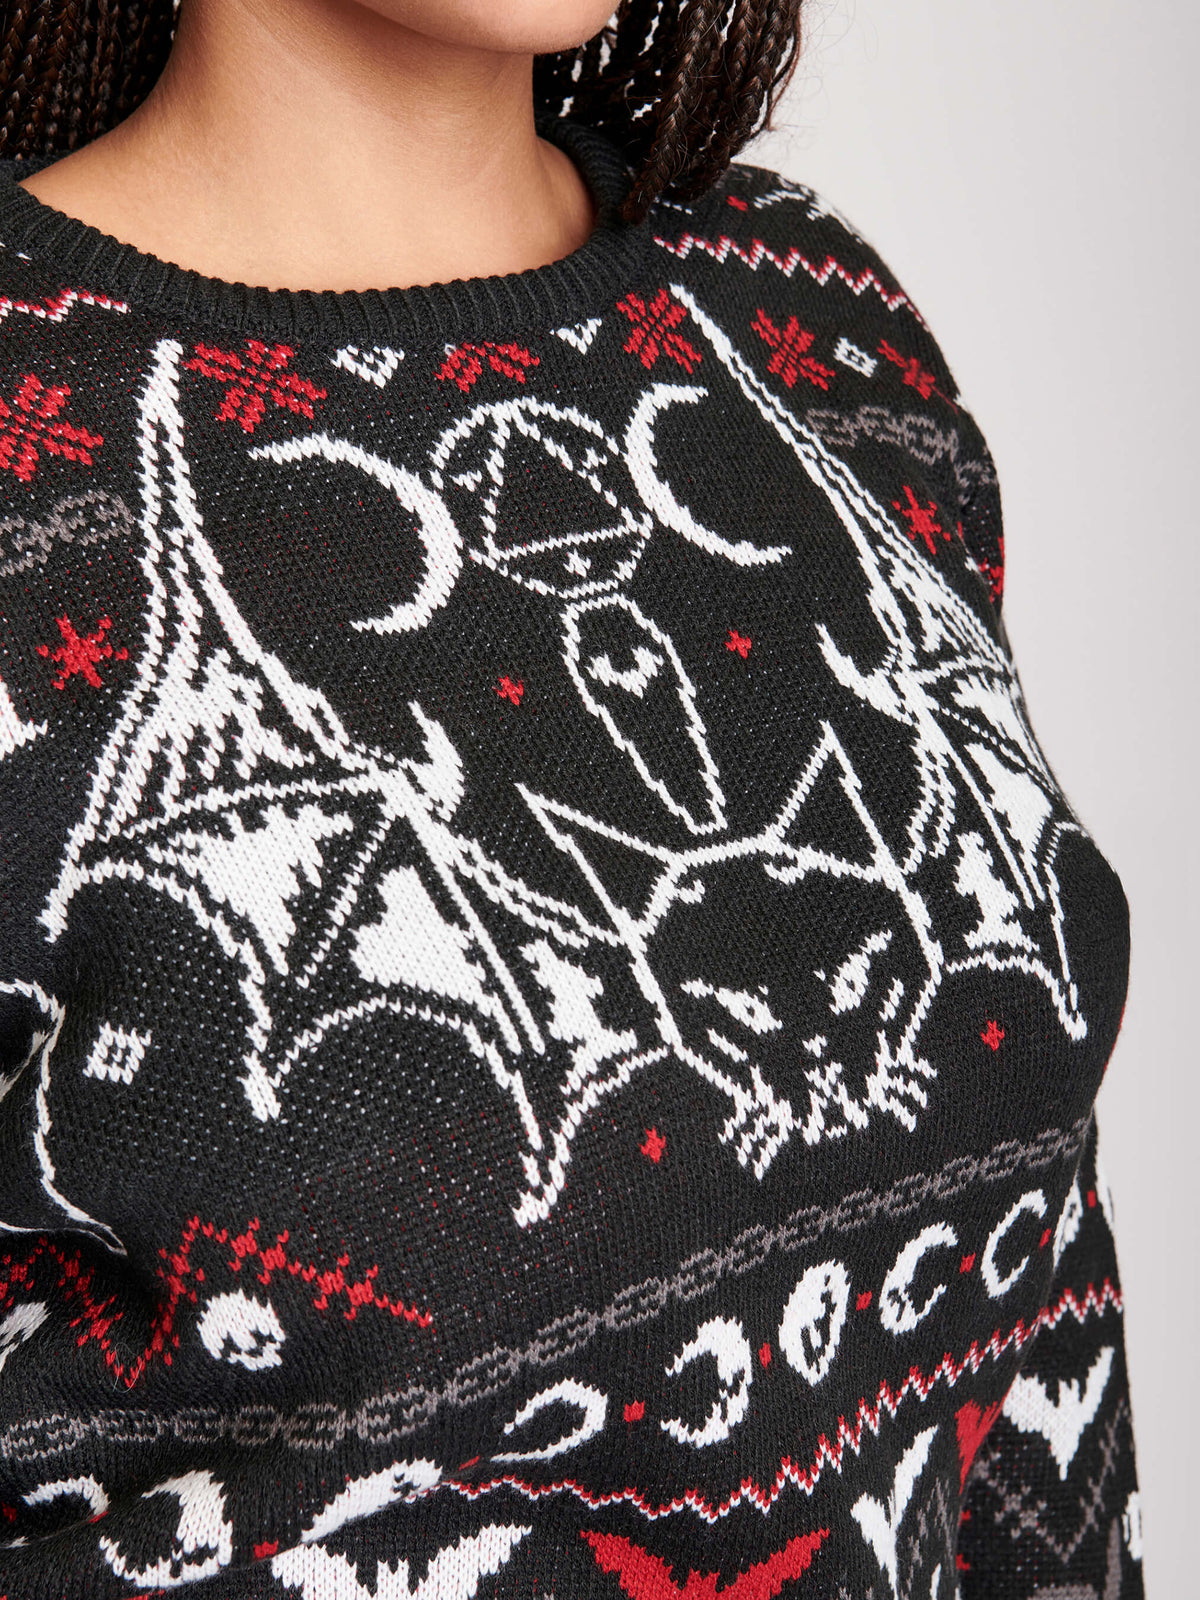 Bat Cat Ugly Xmas Sweater